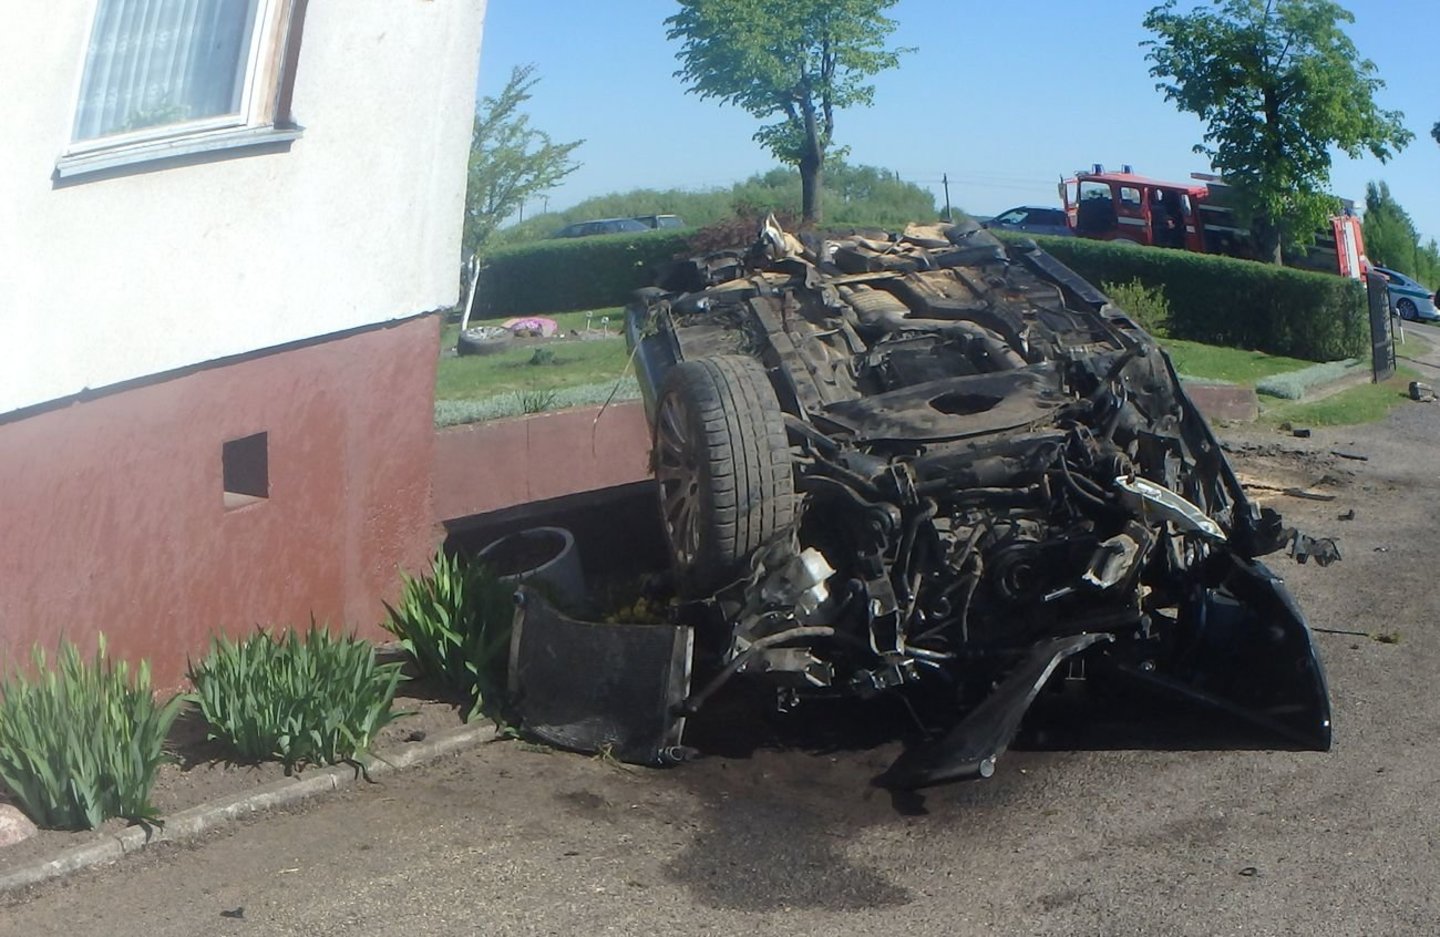  Kauno rajone apvirtus BMW, politraumas patyrė 19-metė vairuotoja ir kartu su ja vykusi 18 metų draugė.<br> Kauno policijos nuotr.